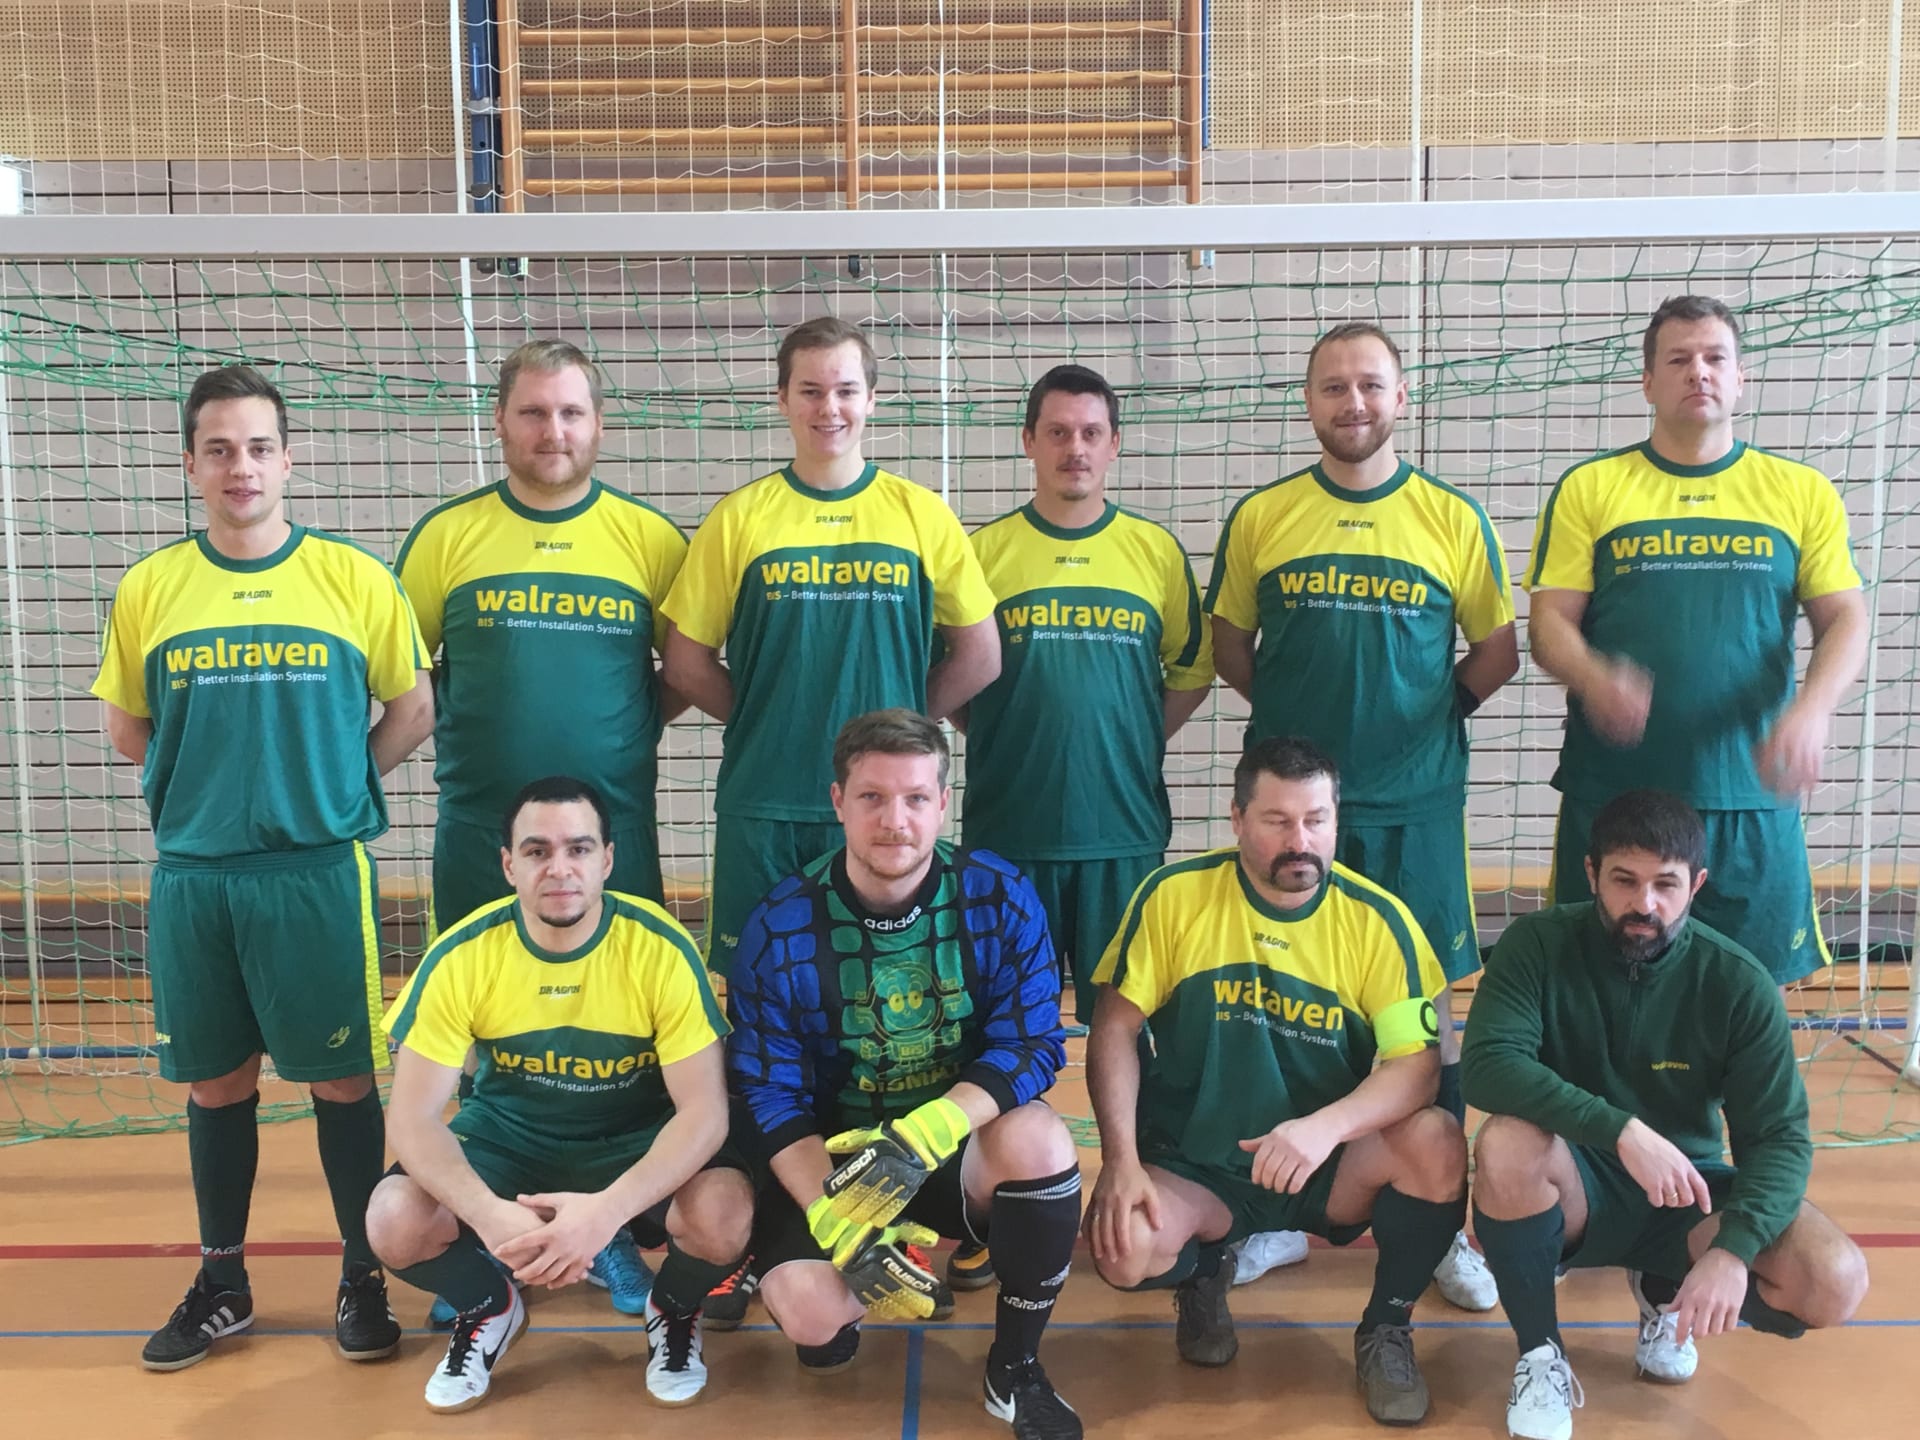 Mannschaftsfoto des Hallenfußball-Teams der Walraven GmbH mit neun Feldspielern und einem Torwart in gelb-grünen Trikots, entstanden bei einem Spaßturnier.